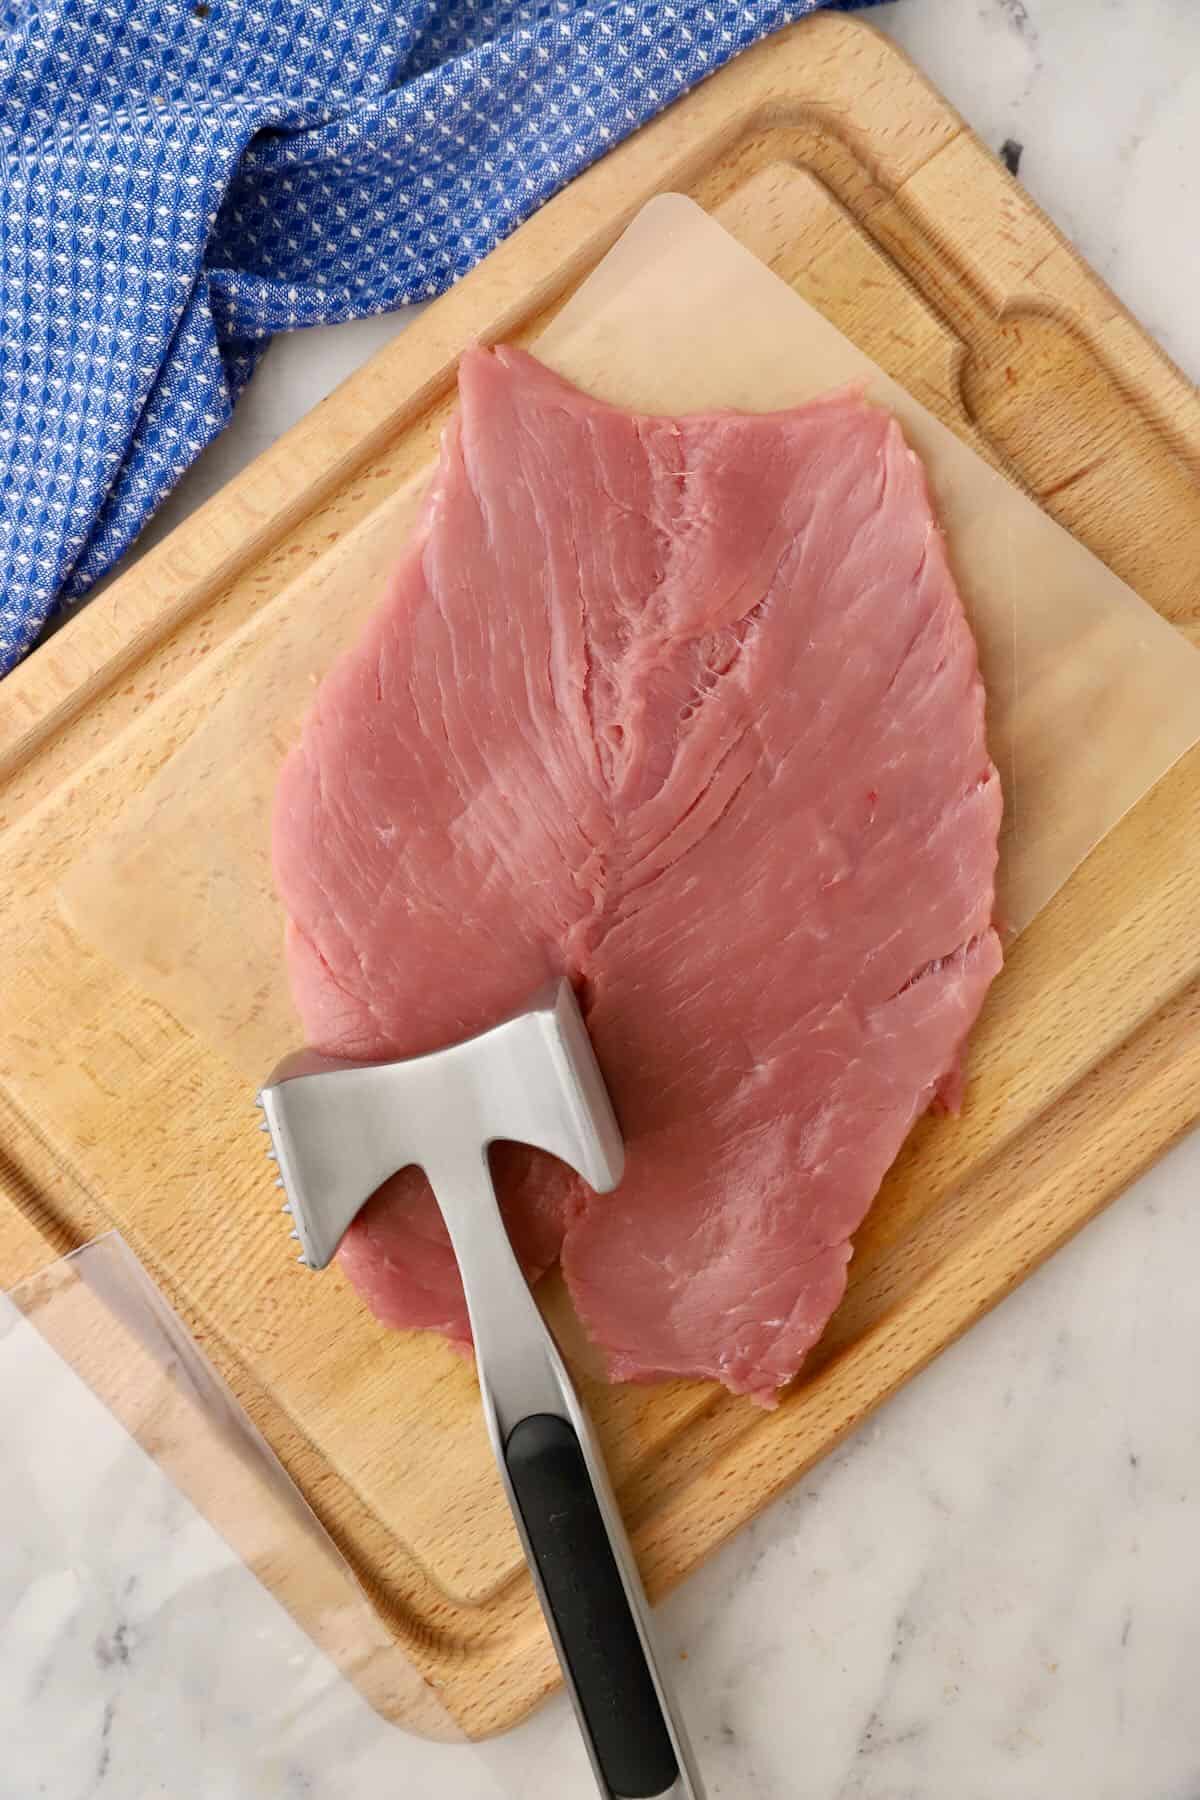 A butterflied pork tenderloin on a cutting board. 